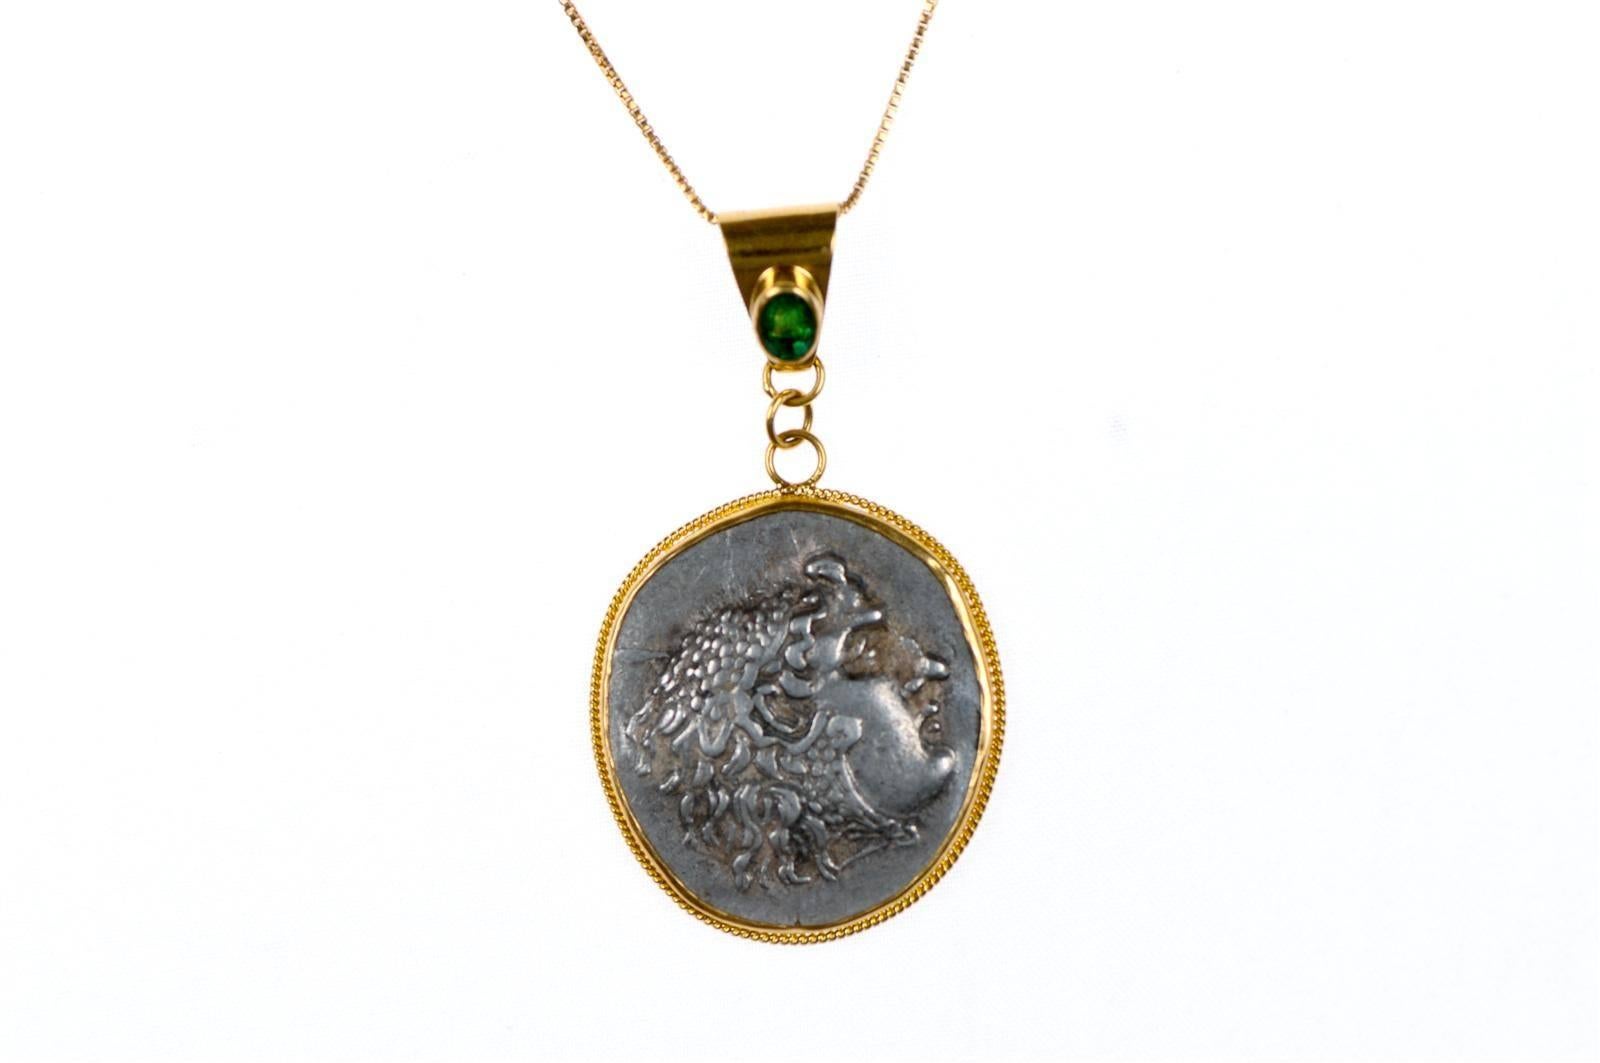 Authentique pièce de monnaie grecque (macédonienne) d'Alexandre le Grand de 336 à 323 av. J.-C., sertie d'une lunette et d'un anneau en or 22 carats avec un accent en pierre d'émeraude. L'avers de la pièce représente Héraclès et Zeus ; le revers. Le